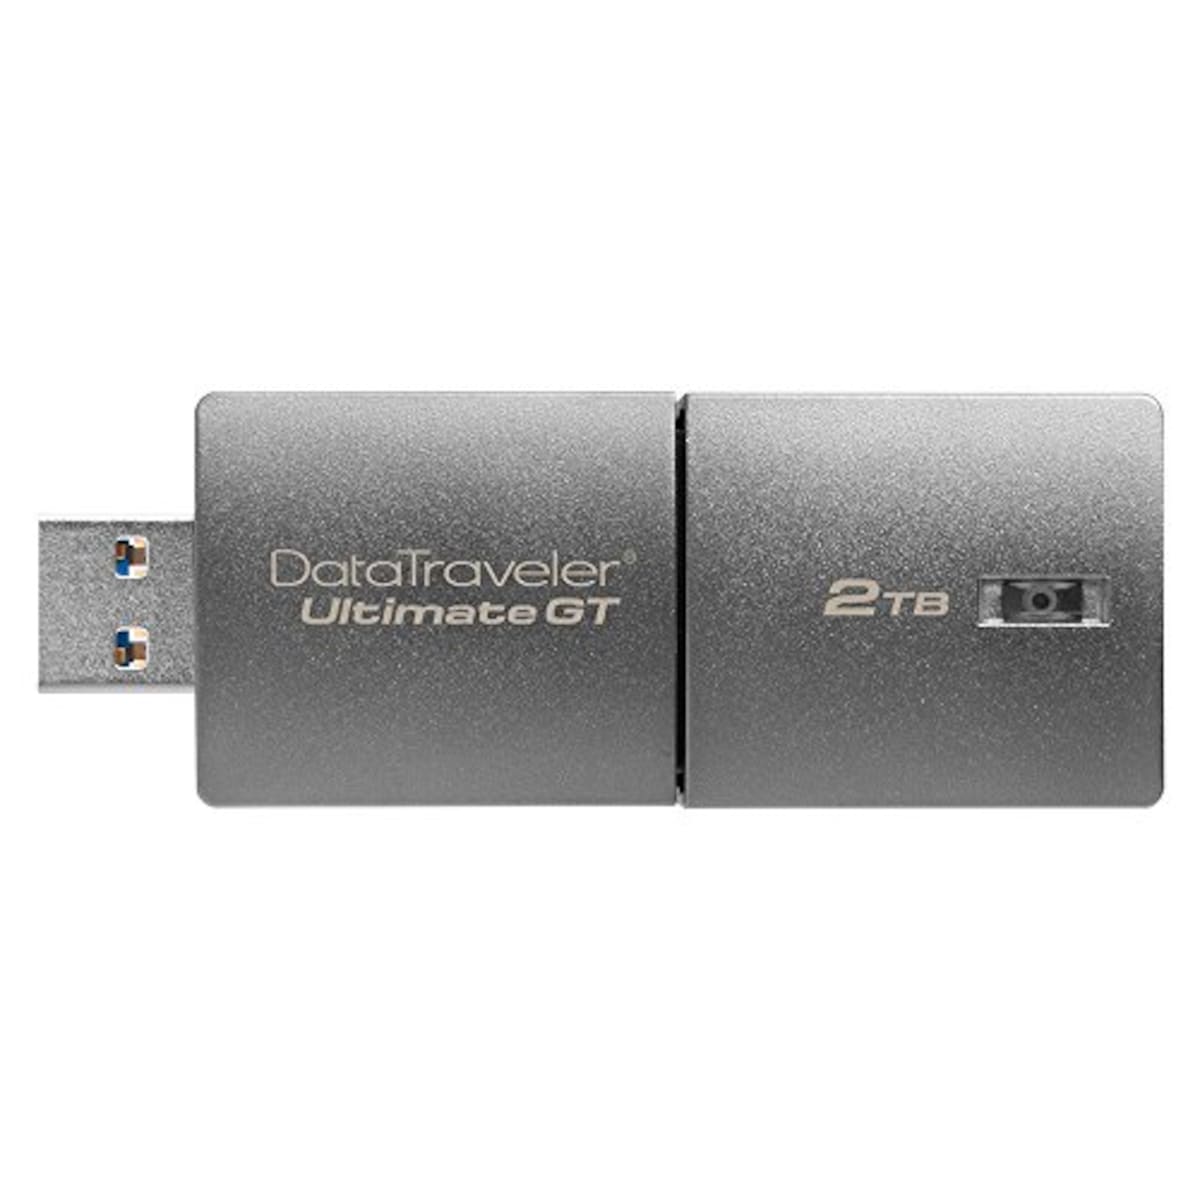 キングストン USBメモリ 2TB USB 3.1 Gen 1 DataTraveler Ultimate GT DTUGT